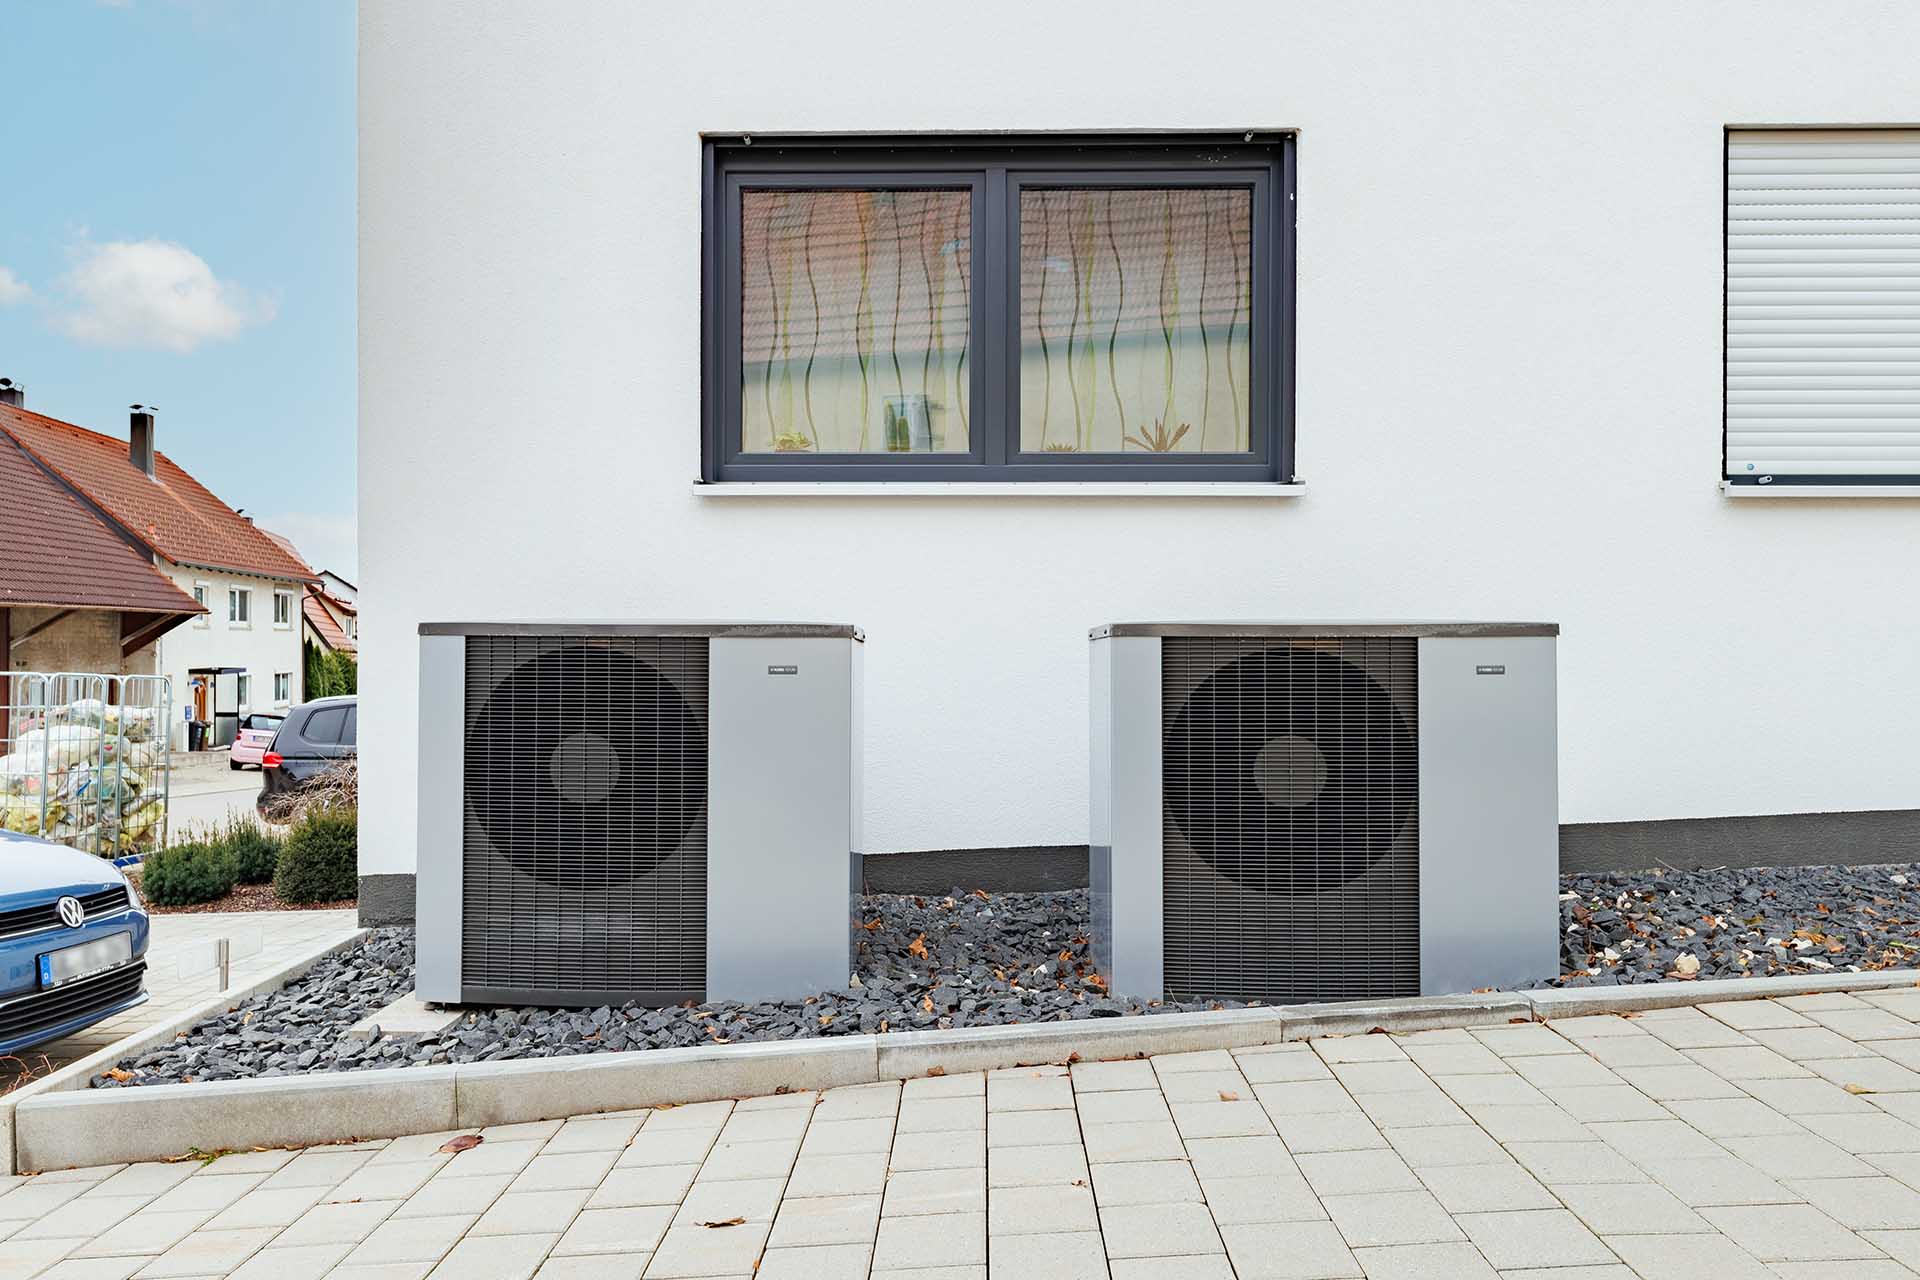 NIBE Luft/Wasser-Wärmepumpen vorm Mehrfamilienhaus in Westerheim